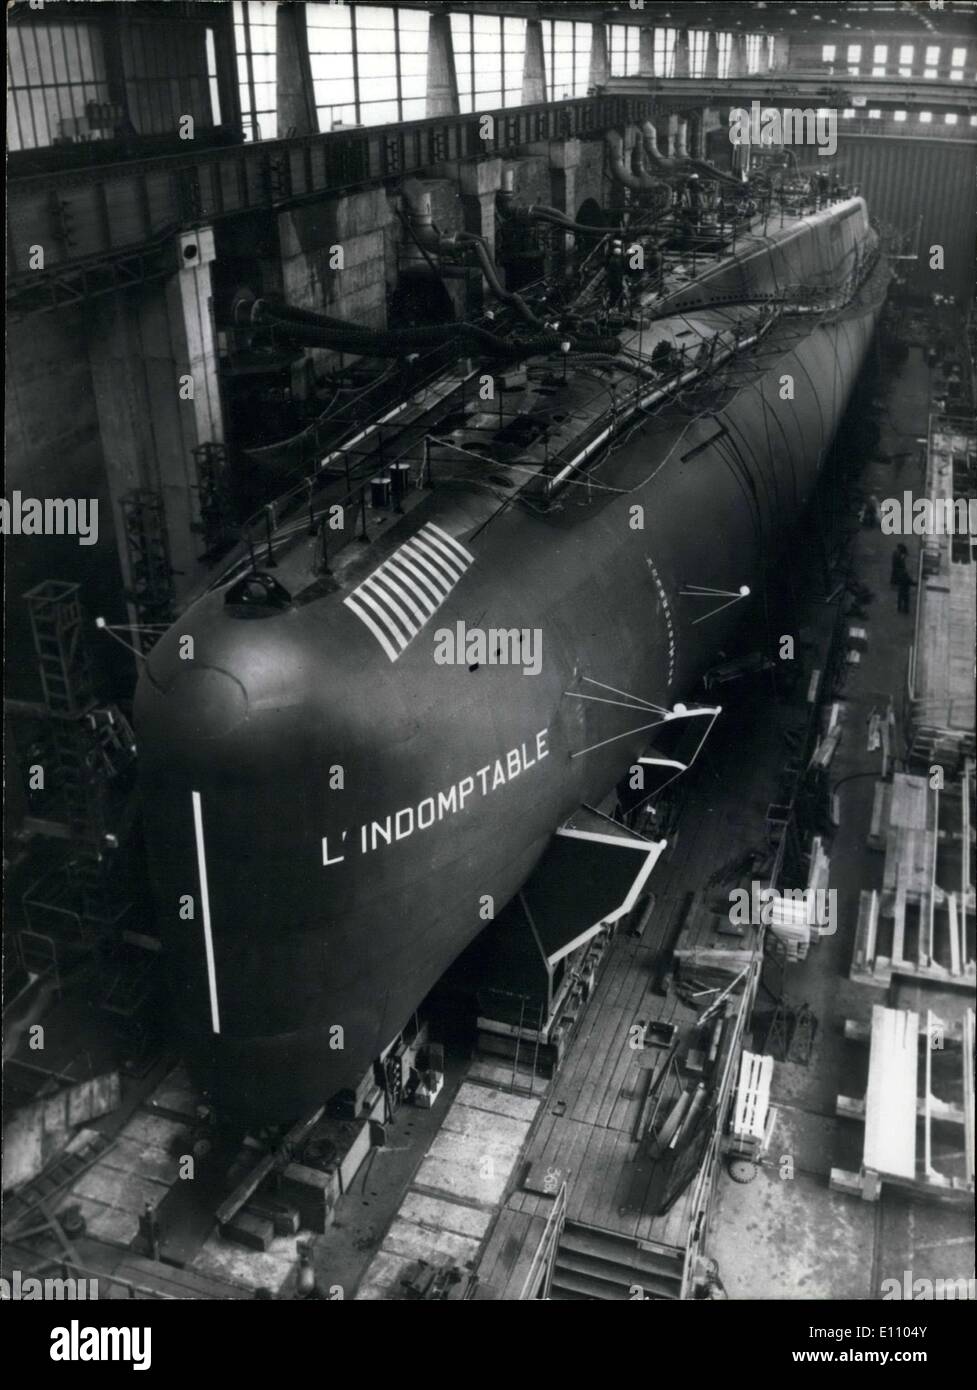 Sett. 12, 1974 - il quarto impianto nucleare francese e il missile balistico sottomarino, il ''Indomptable'', sarà lanciato il prossimo martedì da Cherbourg arsenal. L'ultimo sommergibile farà ritorno a Fort Homet alla fine del 1975. Si completerà la sua prima prova di avviare prima del 1976. Foto Stock